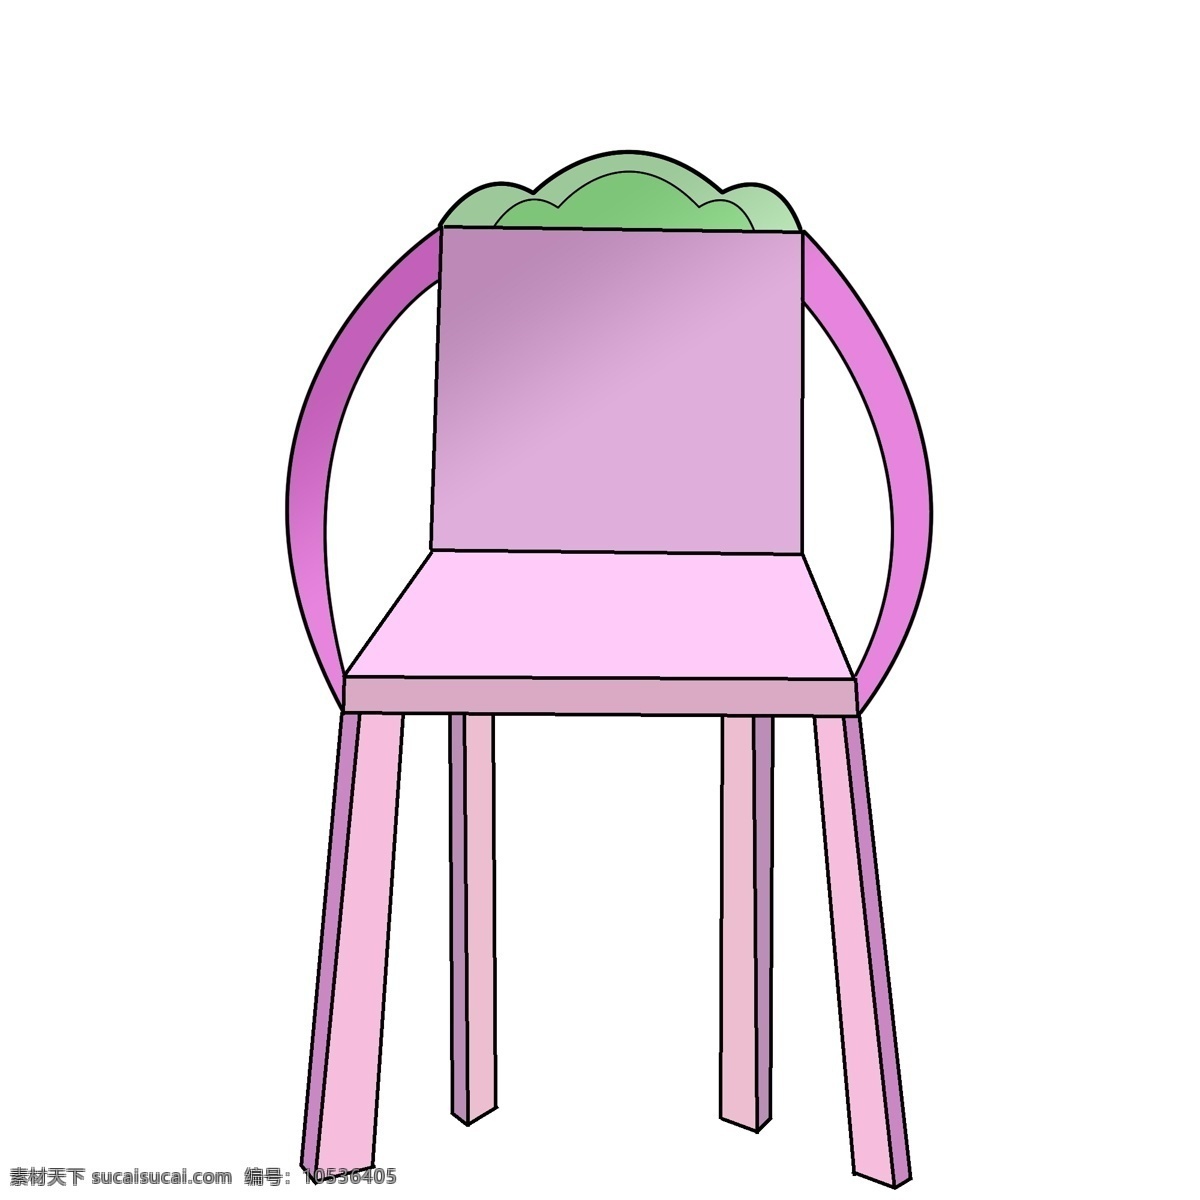 紫色 绿叶 椅子 插画 紫色的椅子 绿色 靠背椅 立体 简约 中式古典家具 带扶手的椅子 家具家私插画